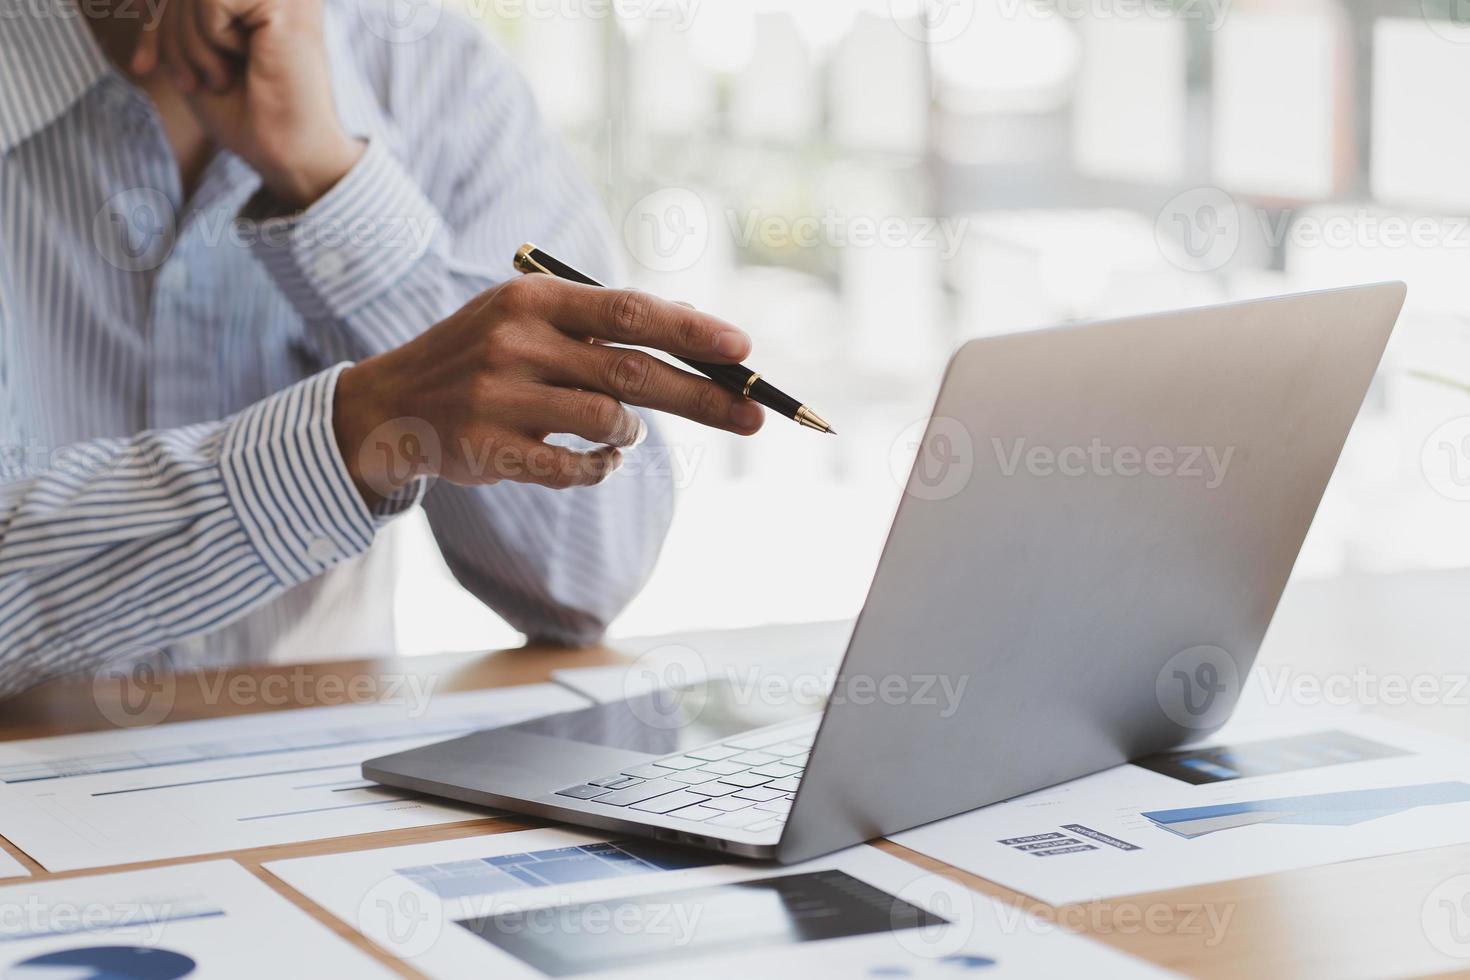 chefen använder en bärbar dator medan han analyserar företagets bokslut på skärmen. foto